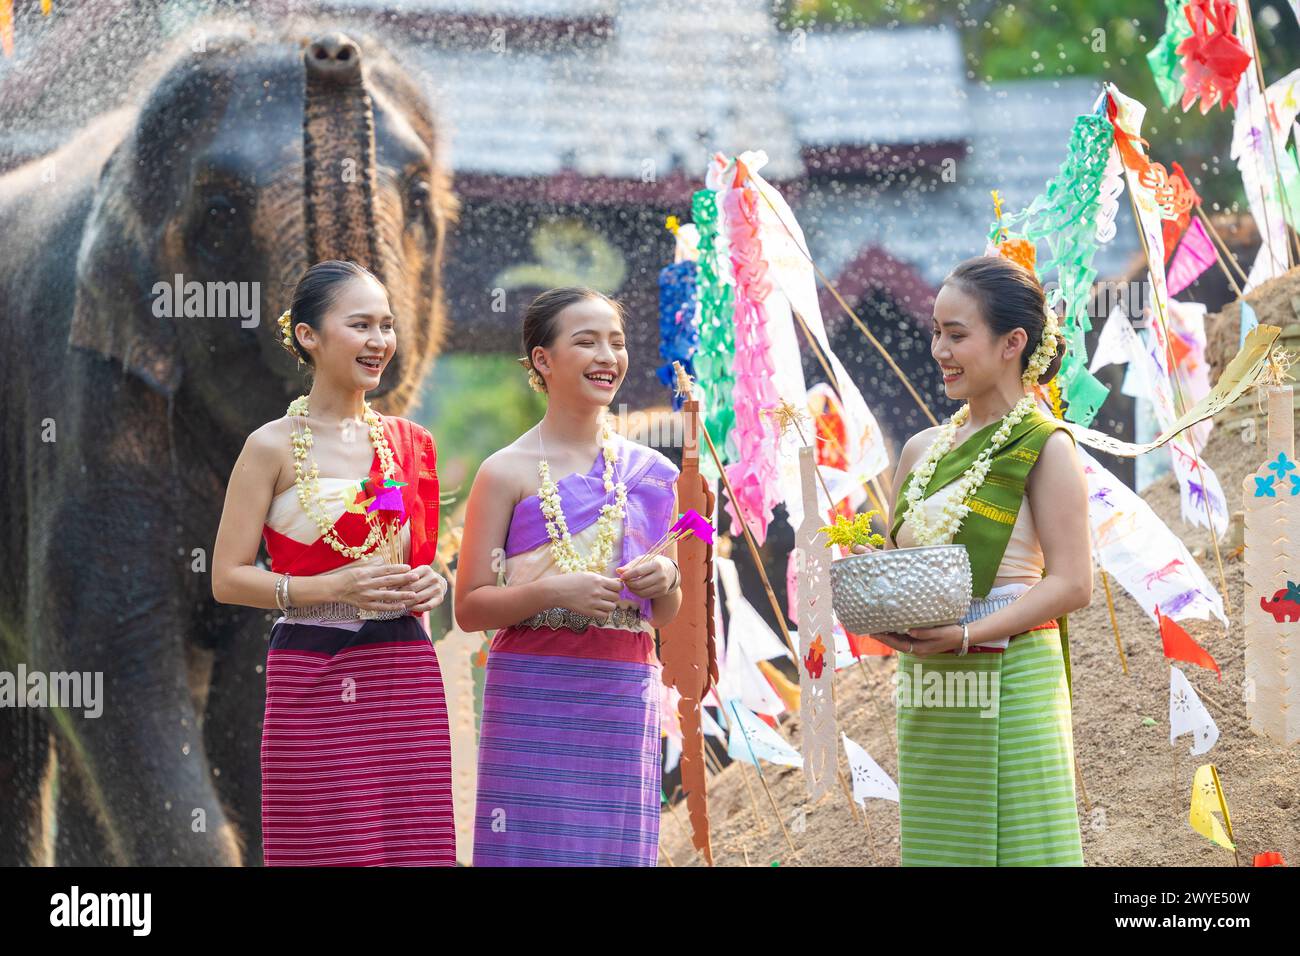 Festival di Songkran. I popoli della Thailandia del Nord indossano abiti tradizionali che spruzzano acqua insieme nel festival culturale di Songkran con il dorso di elefante Foto Stock